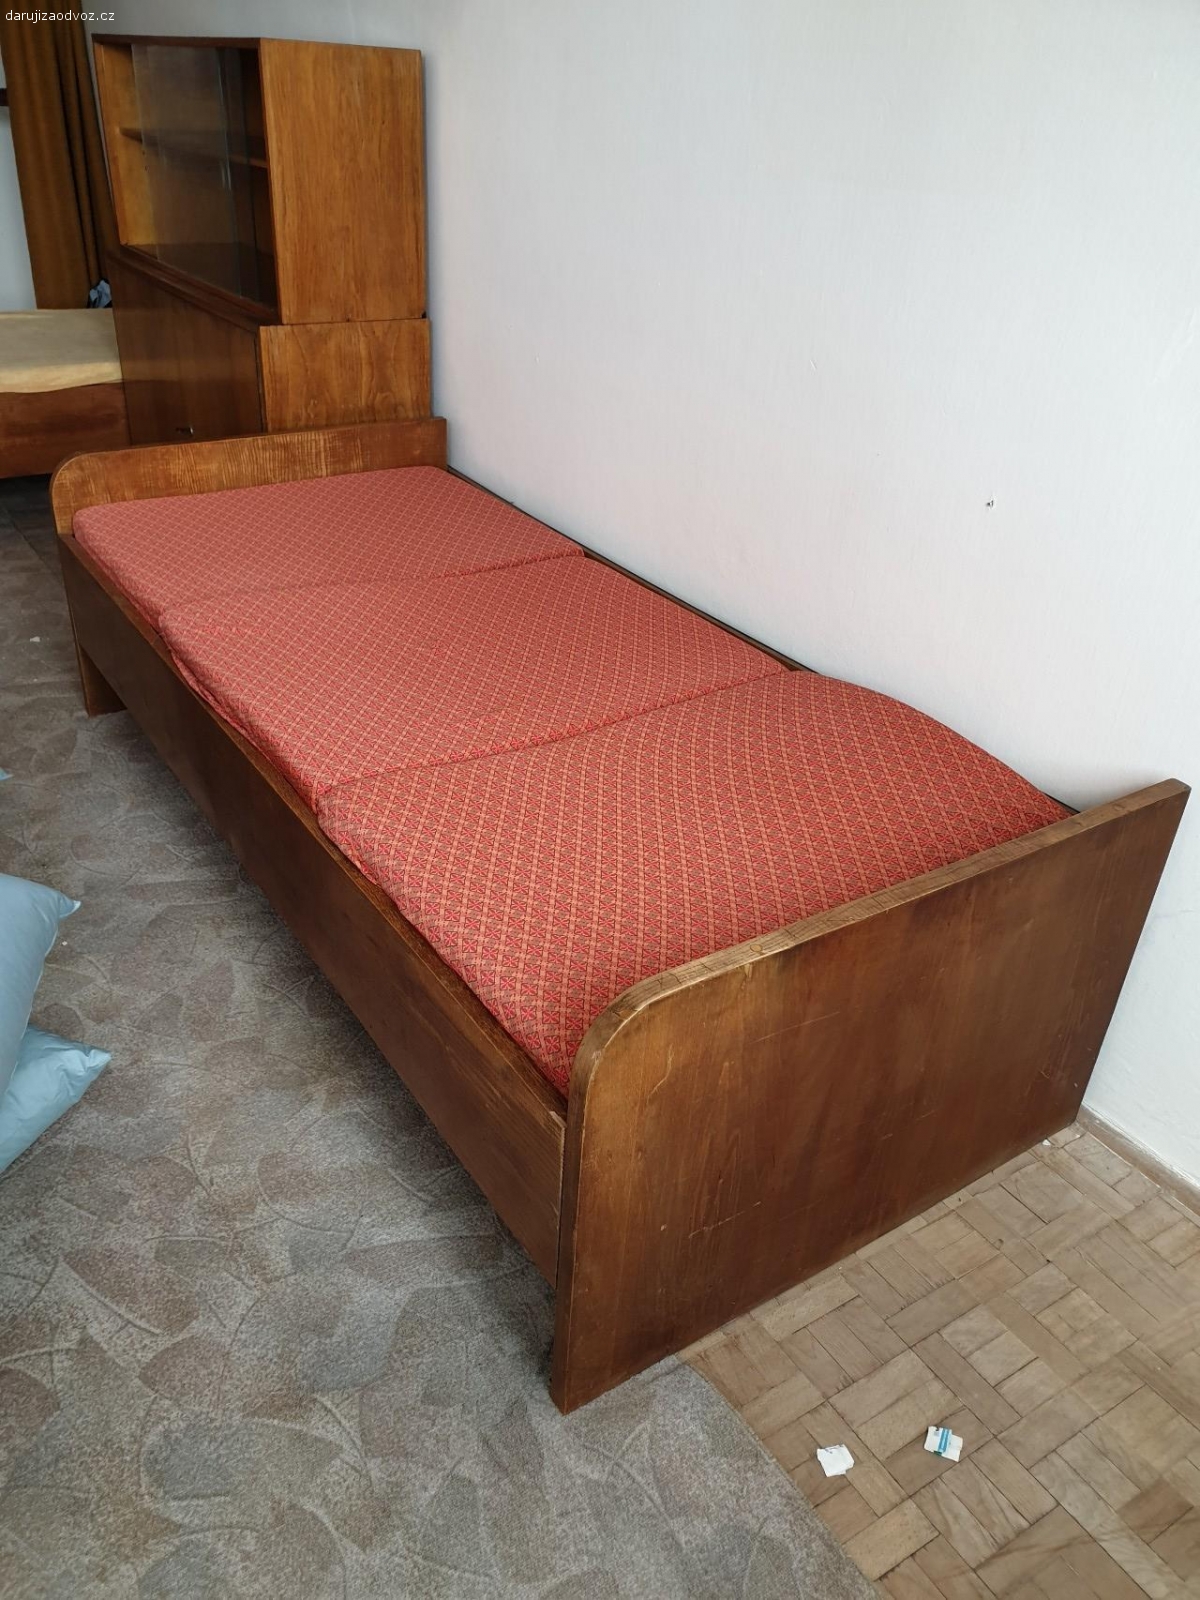 Stará postel za odvoz. více informací po telefonu